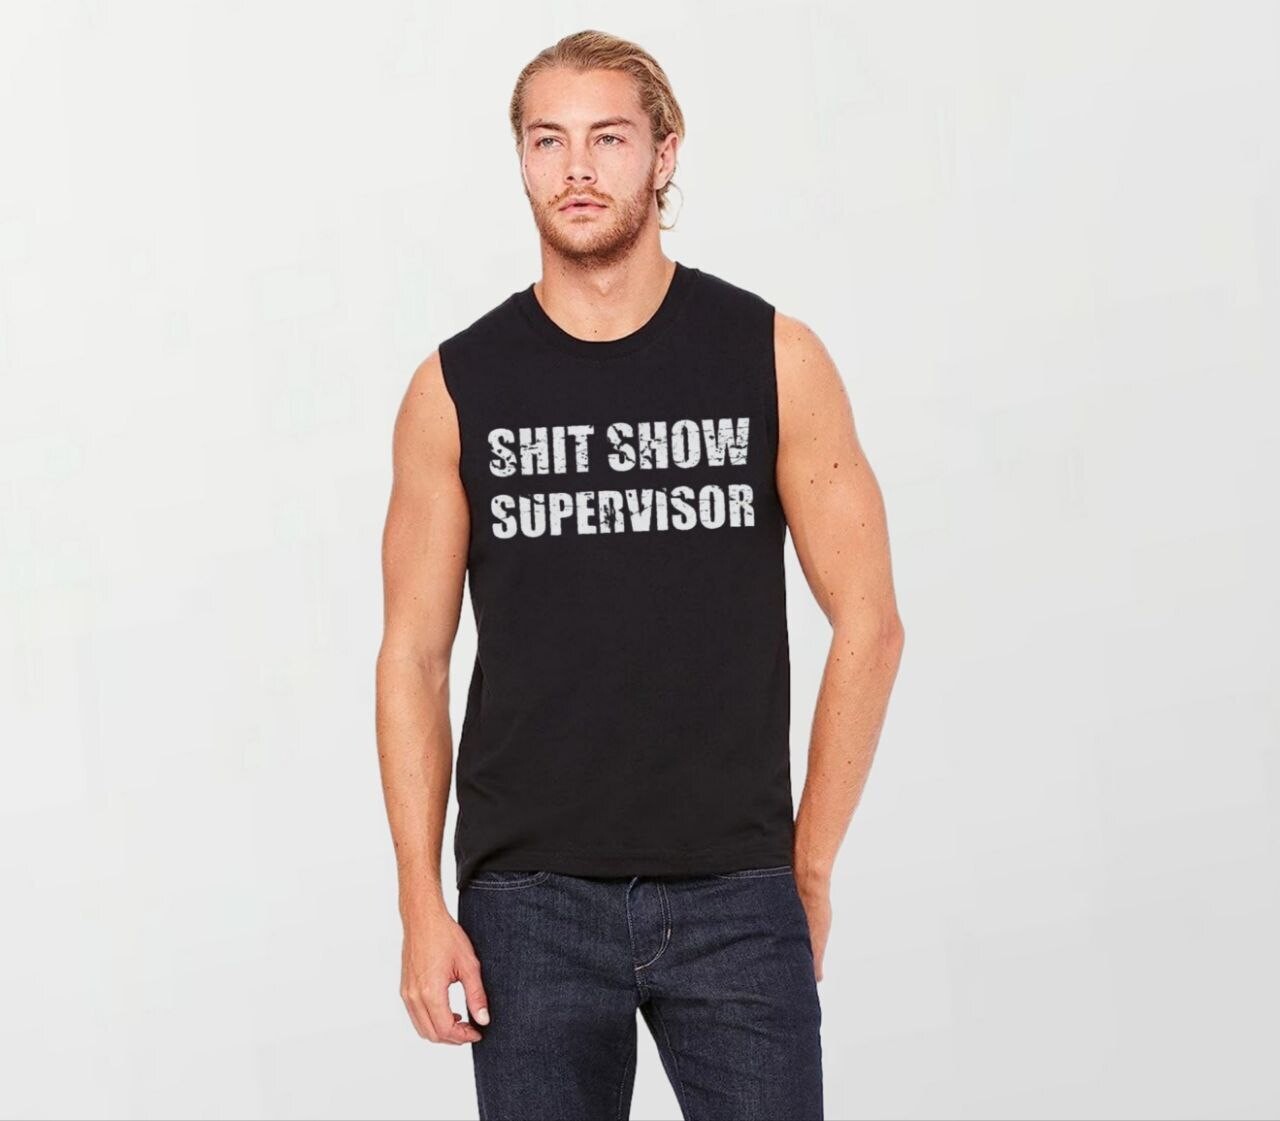 Shit show supervisor_Elite Sleeveless Tee black